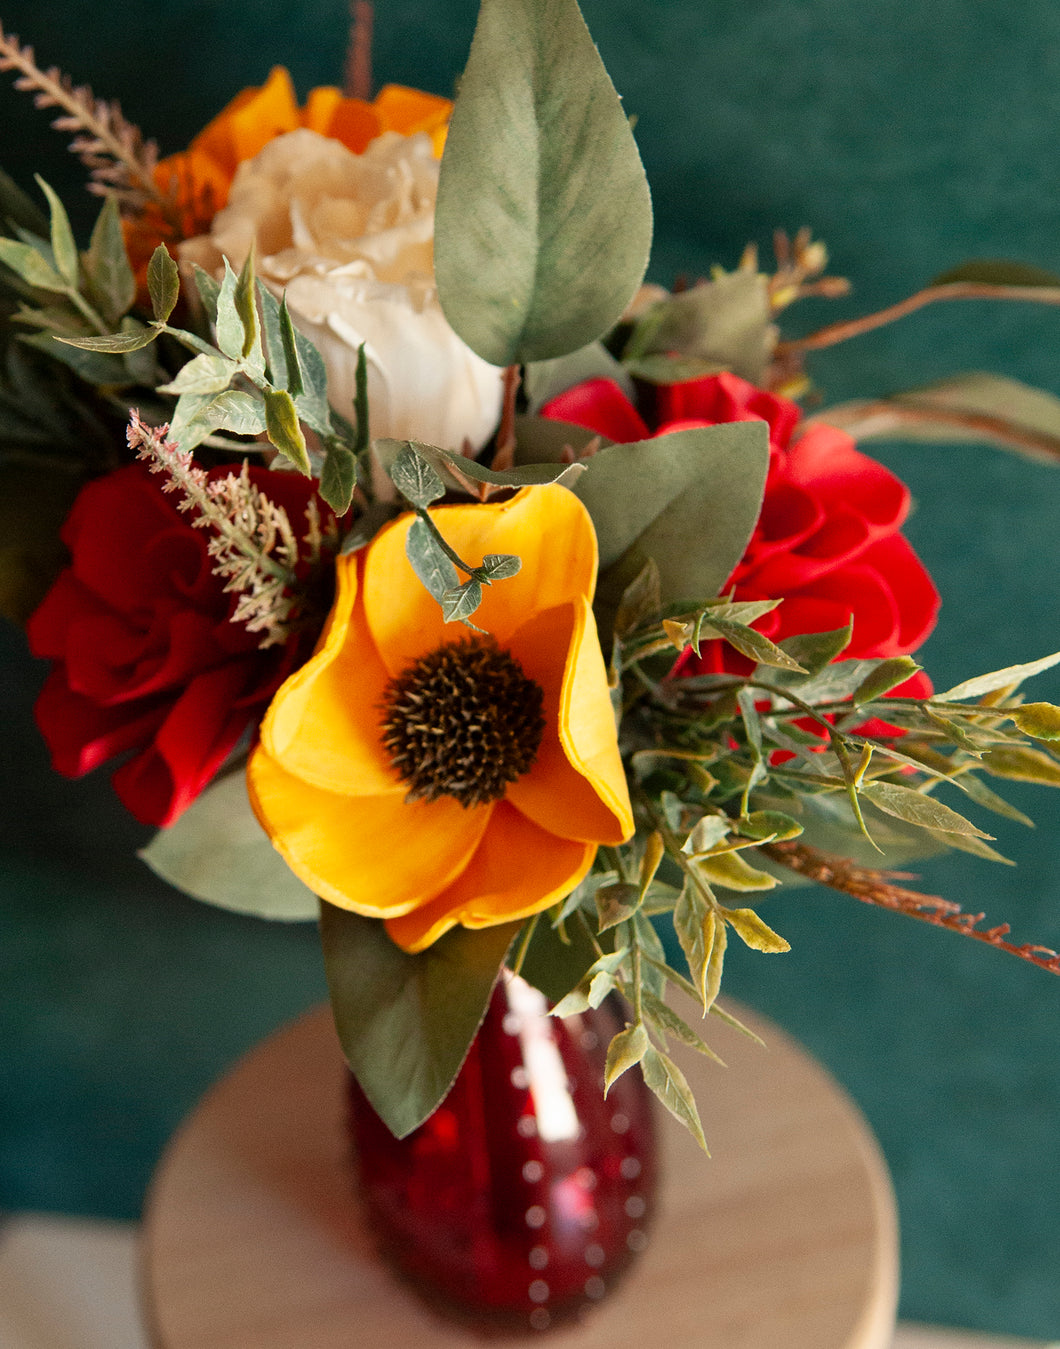 Sola Wood Flowers in red vase